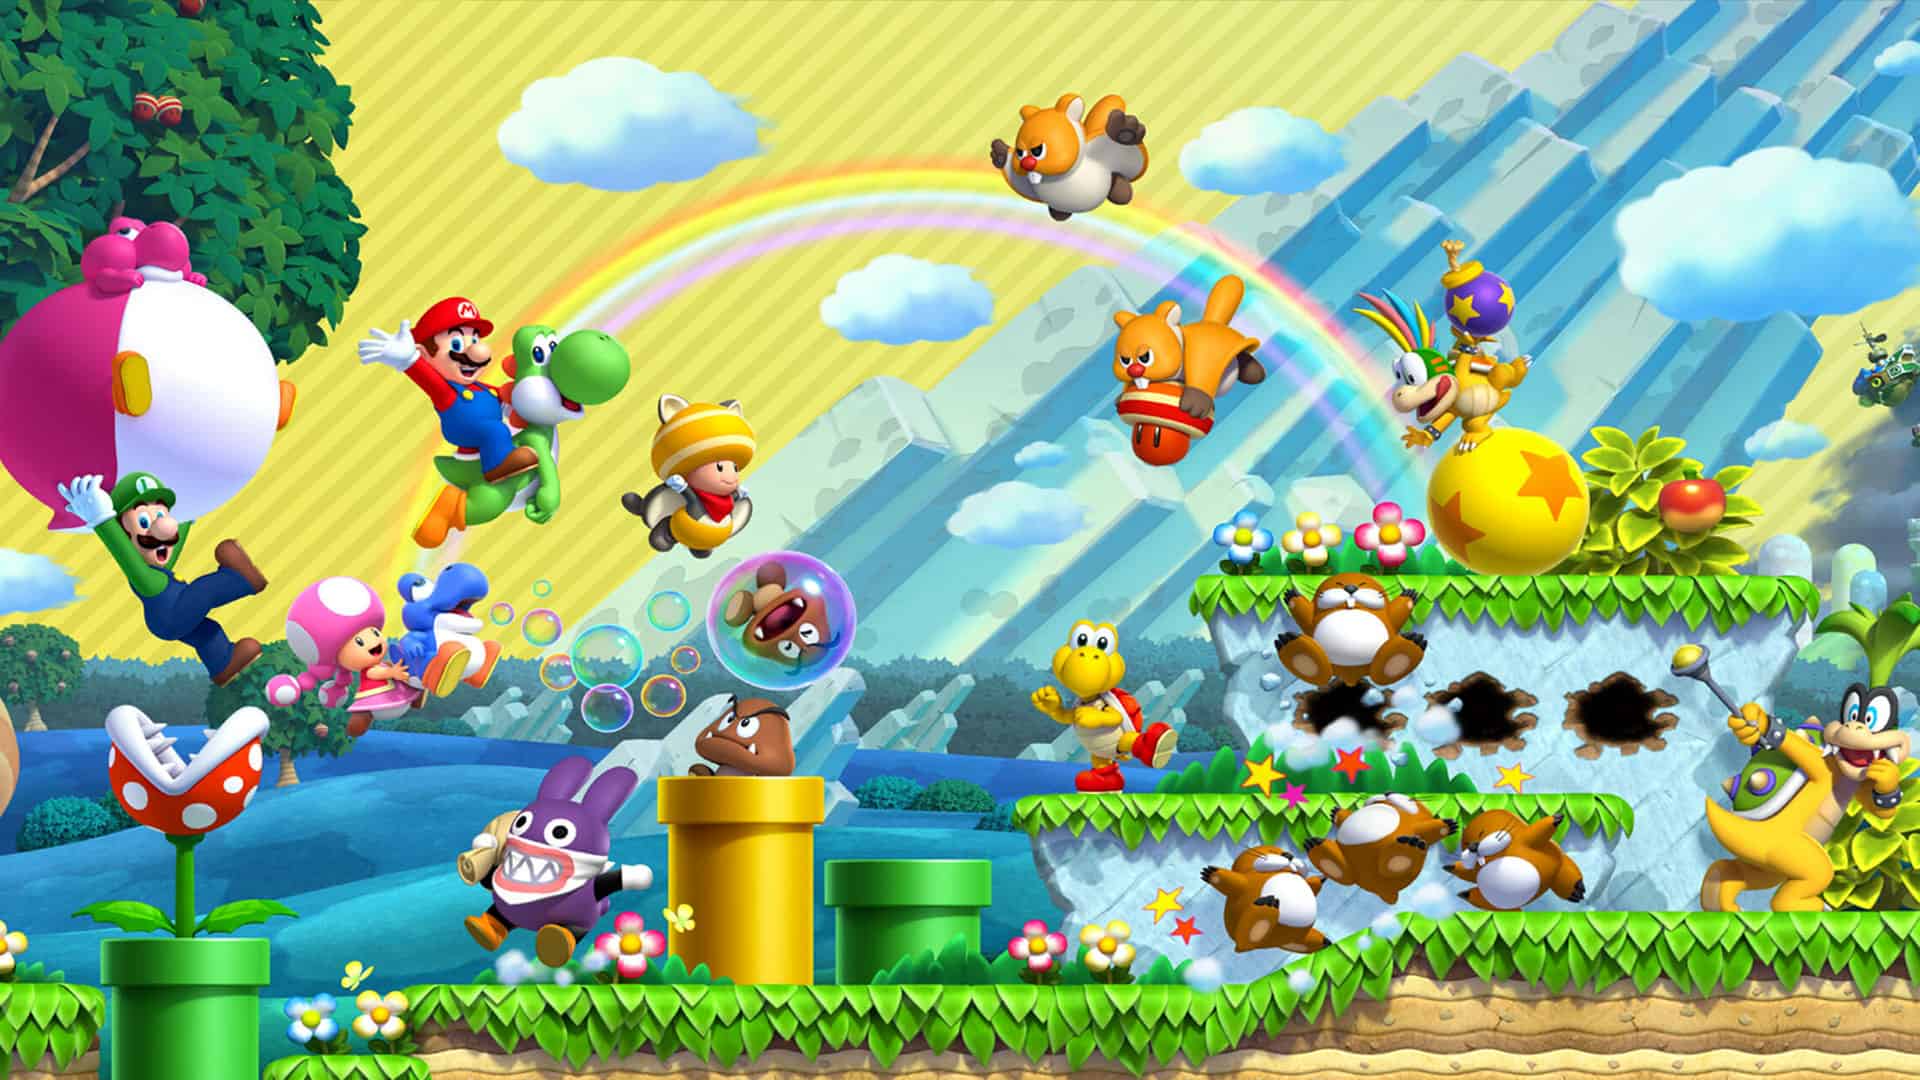 Fan Nintendo bỏ phiếu xếp hạng dòng game yêu thích nhất, bất ngờ với cái tên đứng đầu, Mario chỉ cán đích thứ 7 - Ảnh 2.